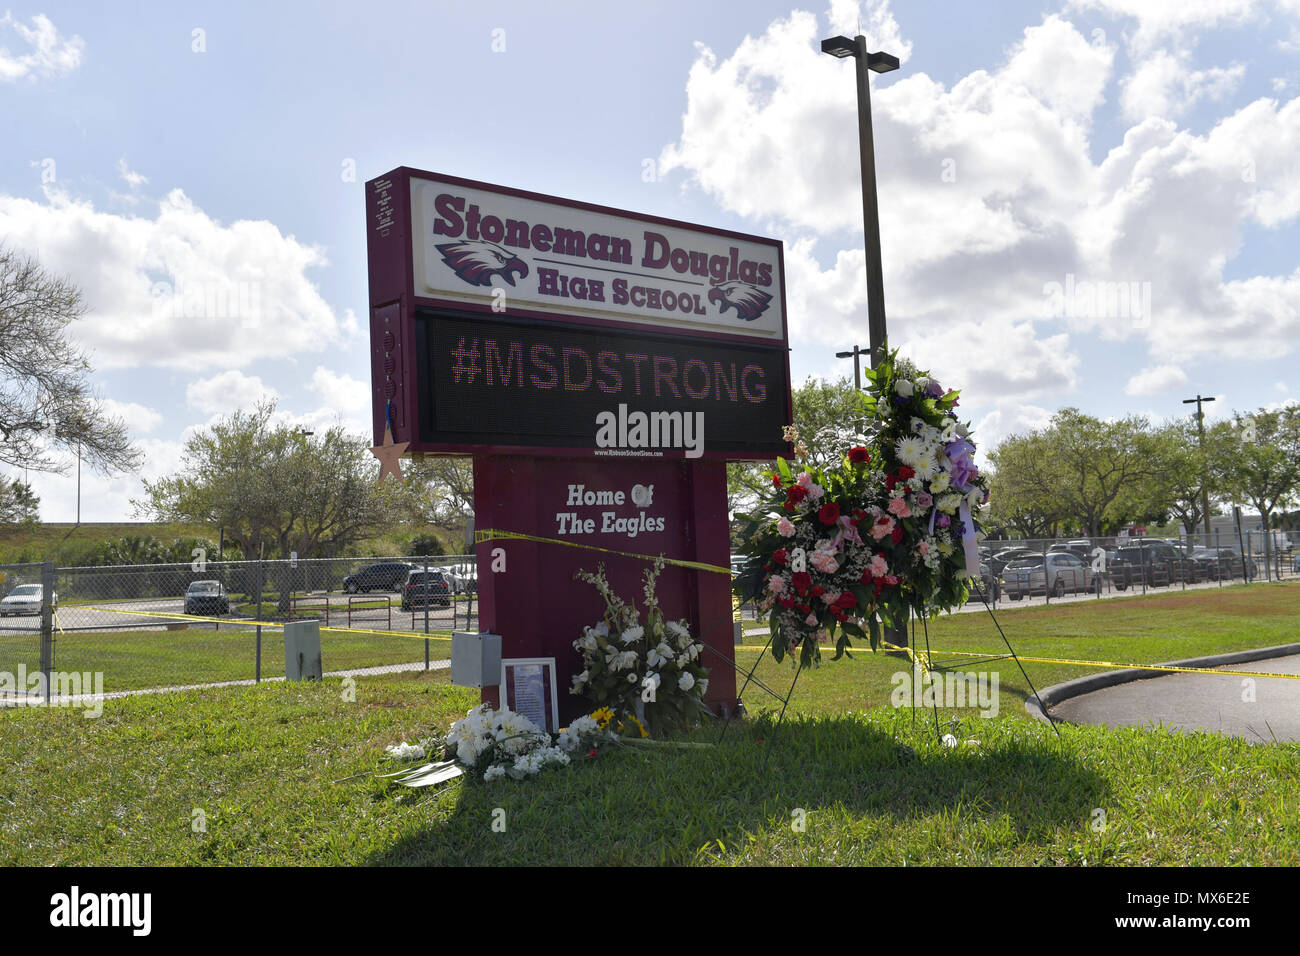 PARKLAND, FL - Februar 23 Schüsse erklang für 4 Minuten als bewaffnete Stellvertretender gewartet, wo 17 Menschen ermordet wurden. Schüler und Lehrer zurück zu Marjory Stoneman Douglas High School am 23. Februar in Parkland, Florida 2018. Personen: Marjory Stoneman Douglas High School Stockfoto